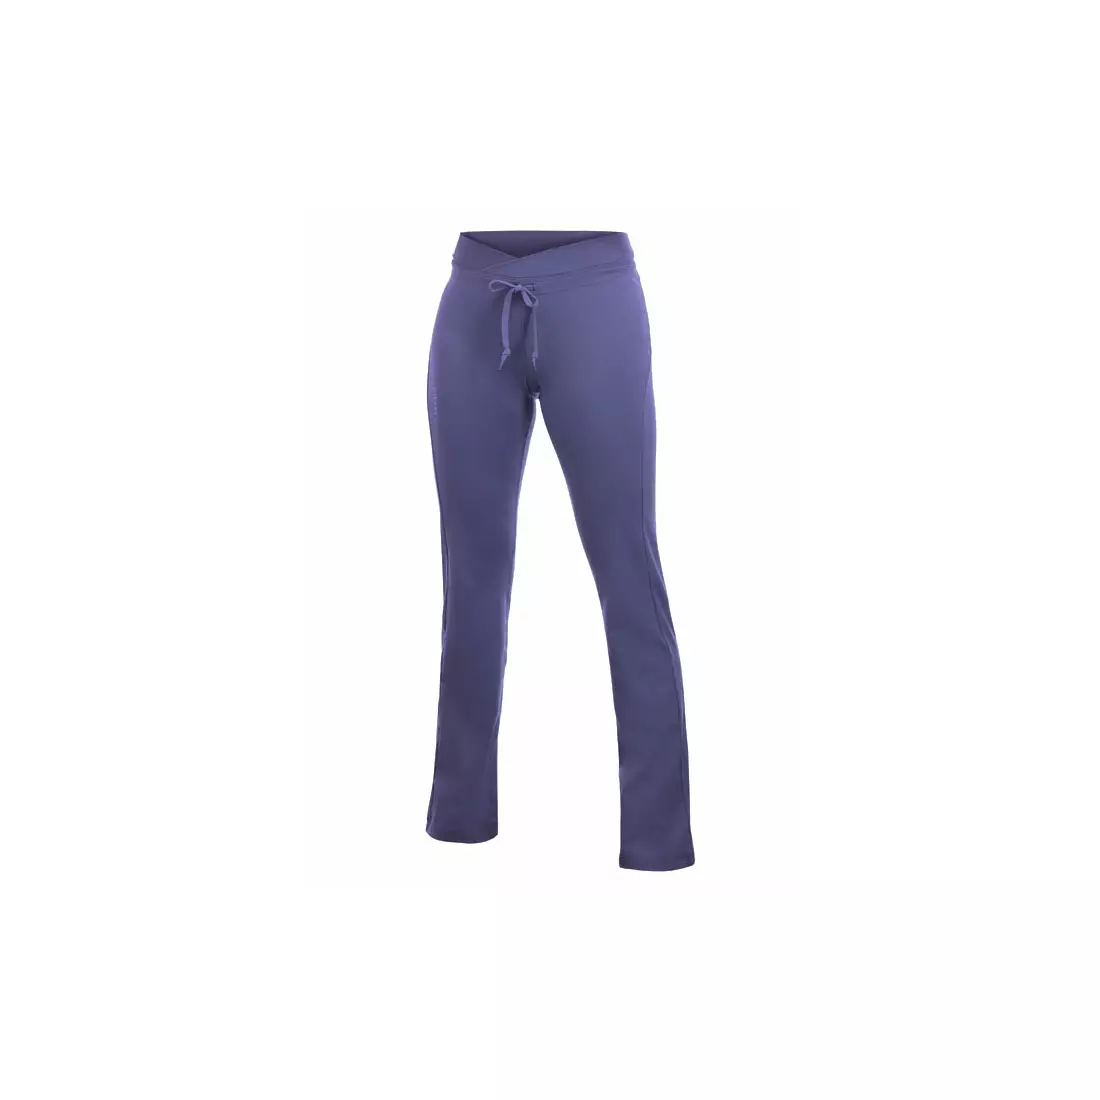 CRAFT ACTIVE - women's running pants 194174-1395